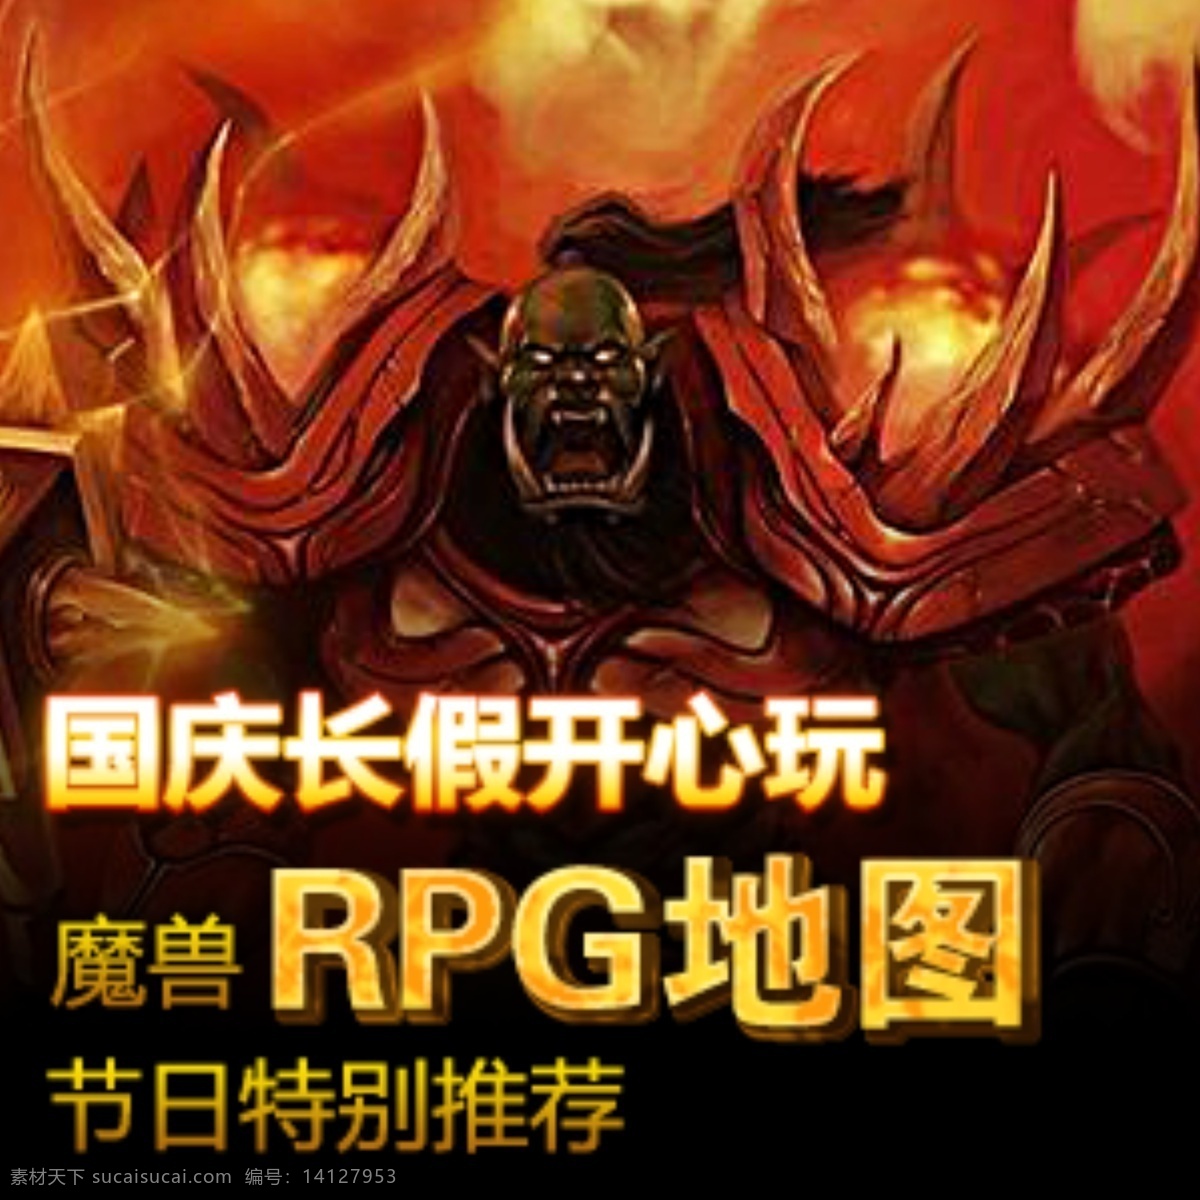 魔兽争霸广告 魔兽争霸 网页广告 游戏人物 中文模版 网页模板 源文件